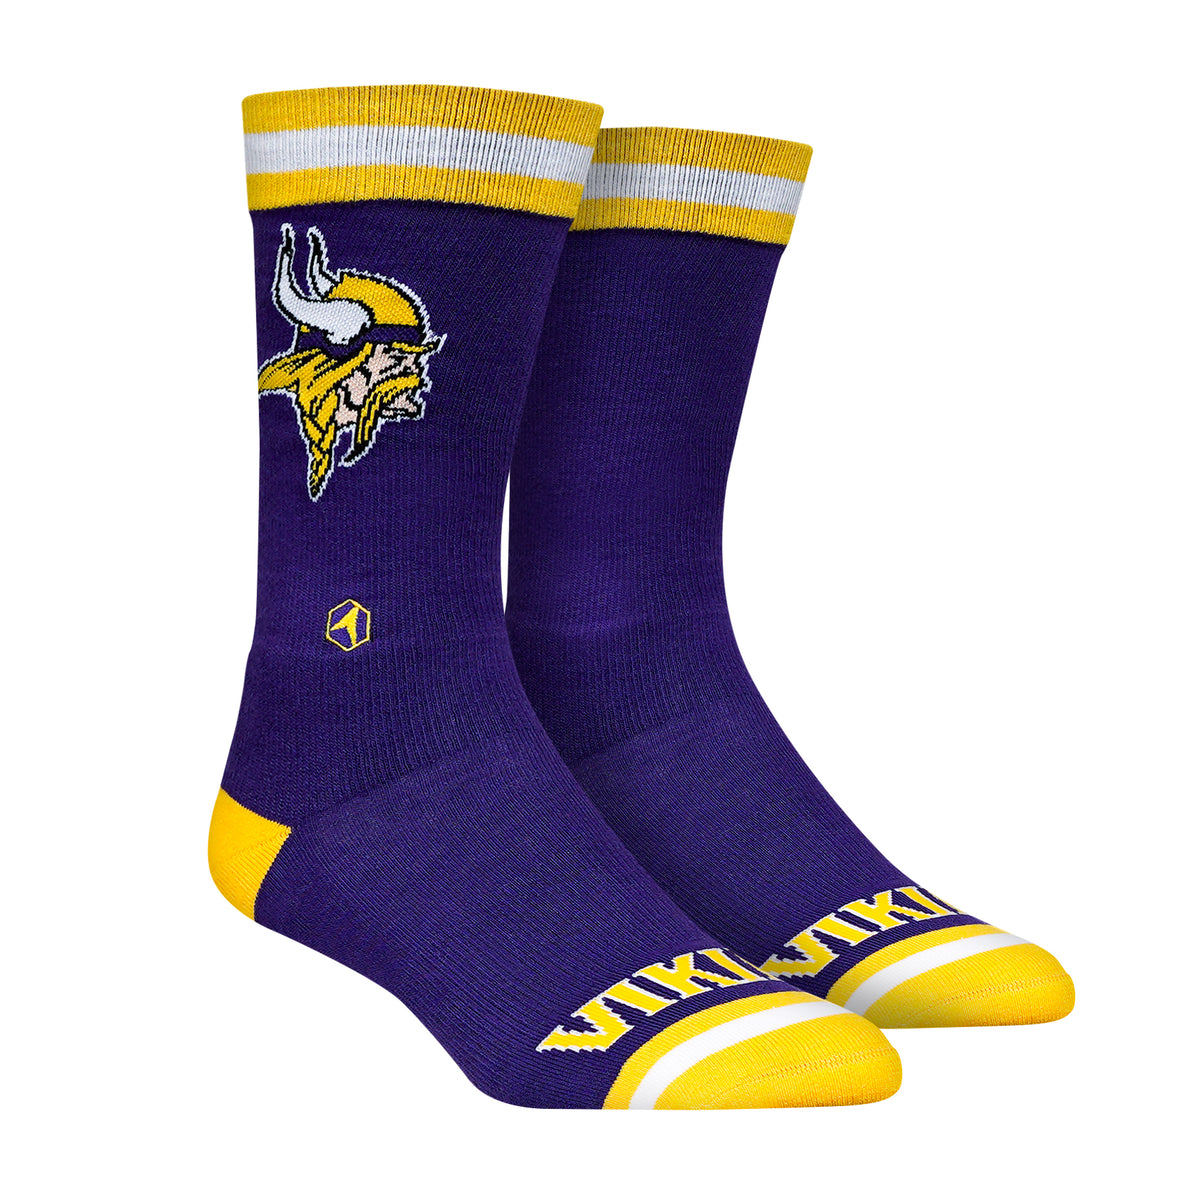 Minnesota Vikings Socks -Throwback Knitted - NFL Socks - Rock 'Em Socks